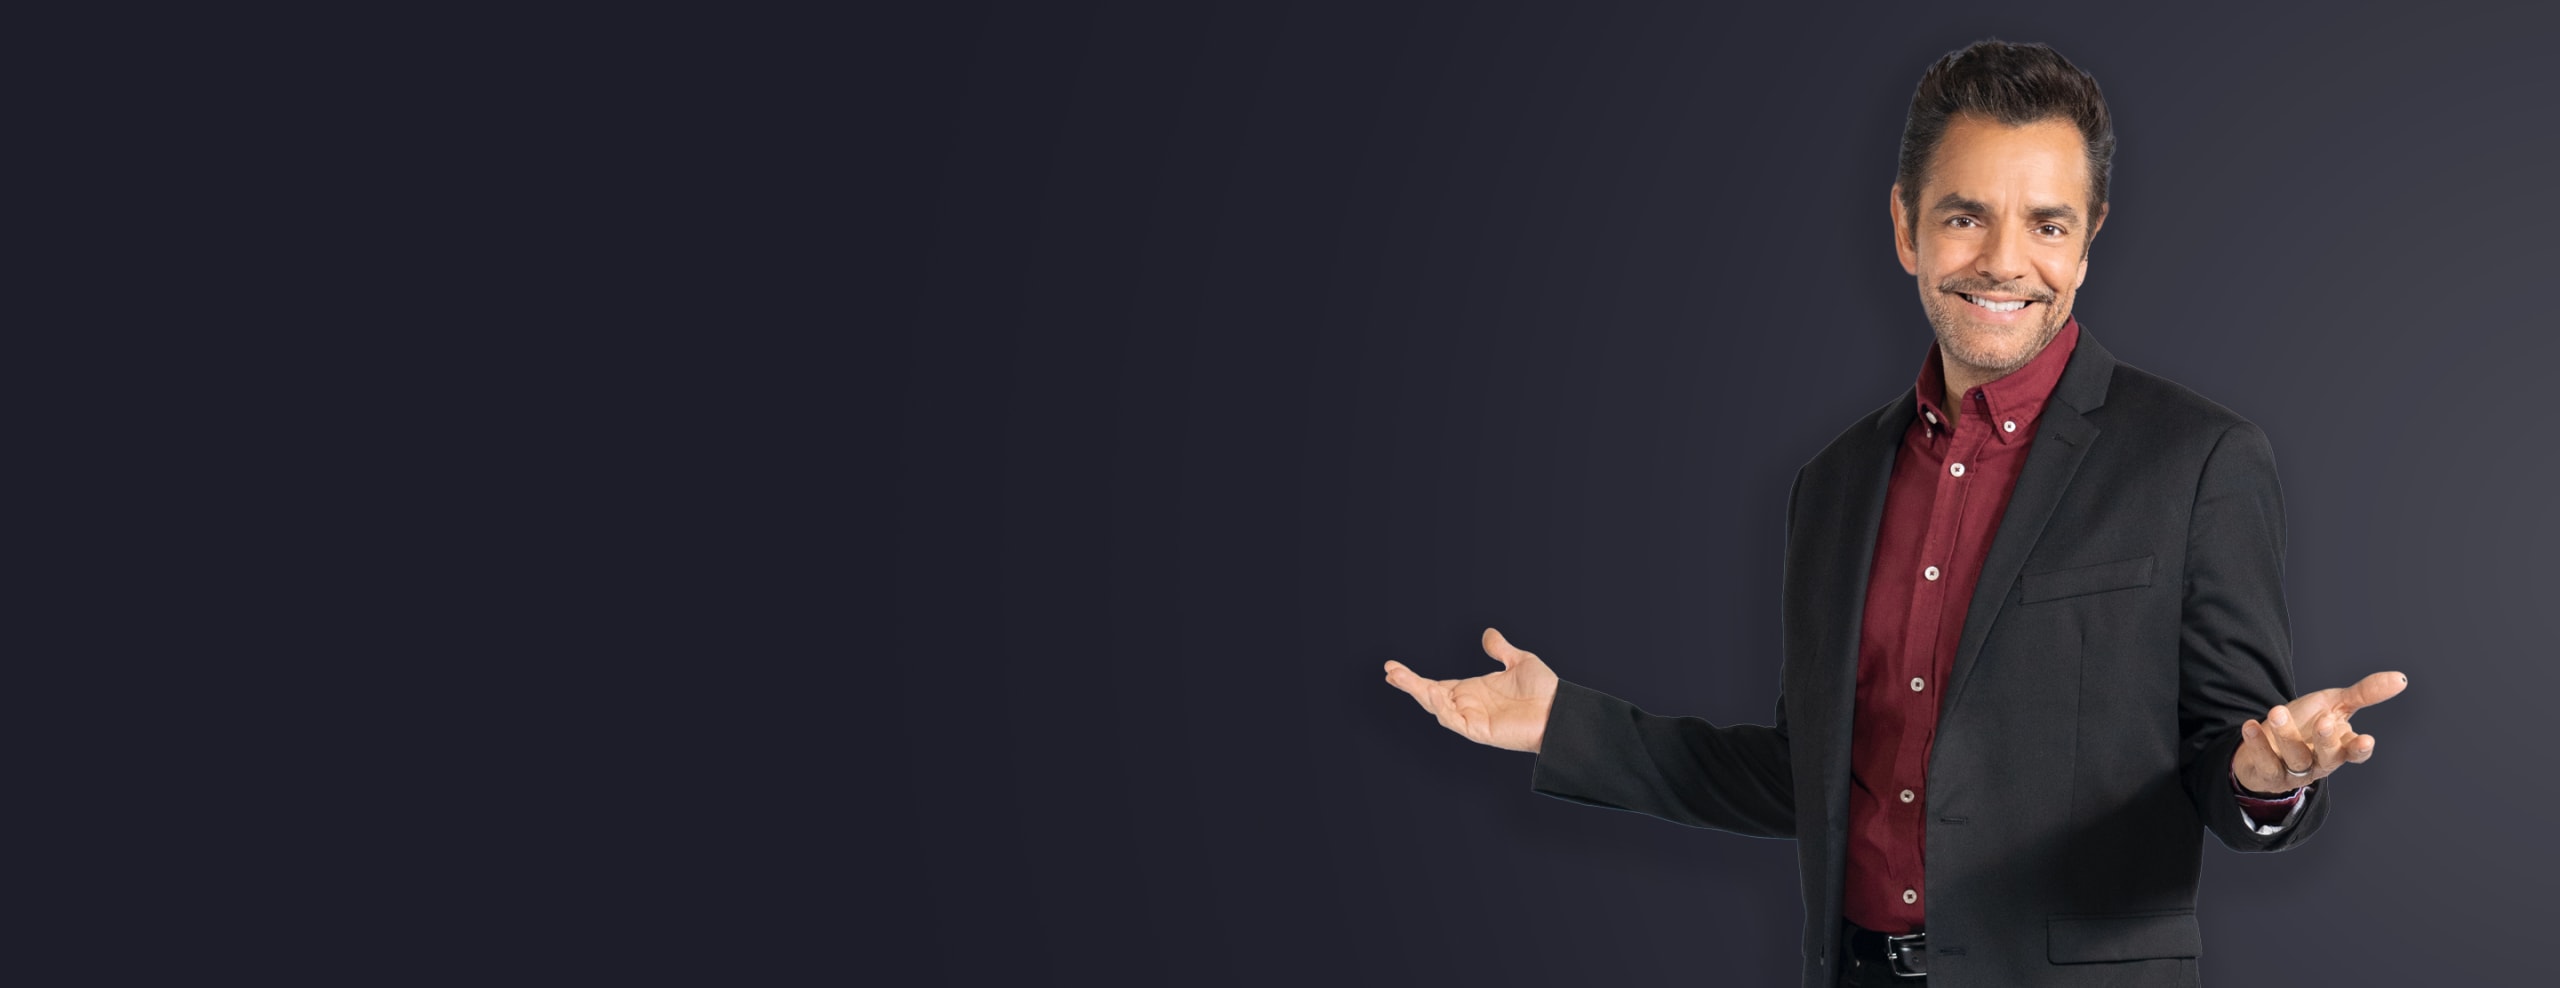 Eugenio Derbez con los brazos abiertos invitando. Lleva una camisa roja y una chaqueta deportiva negra.

Eugenio Derbez with open inviting arms. He's wearing a red shirt and black sport coat.